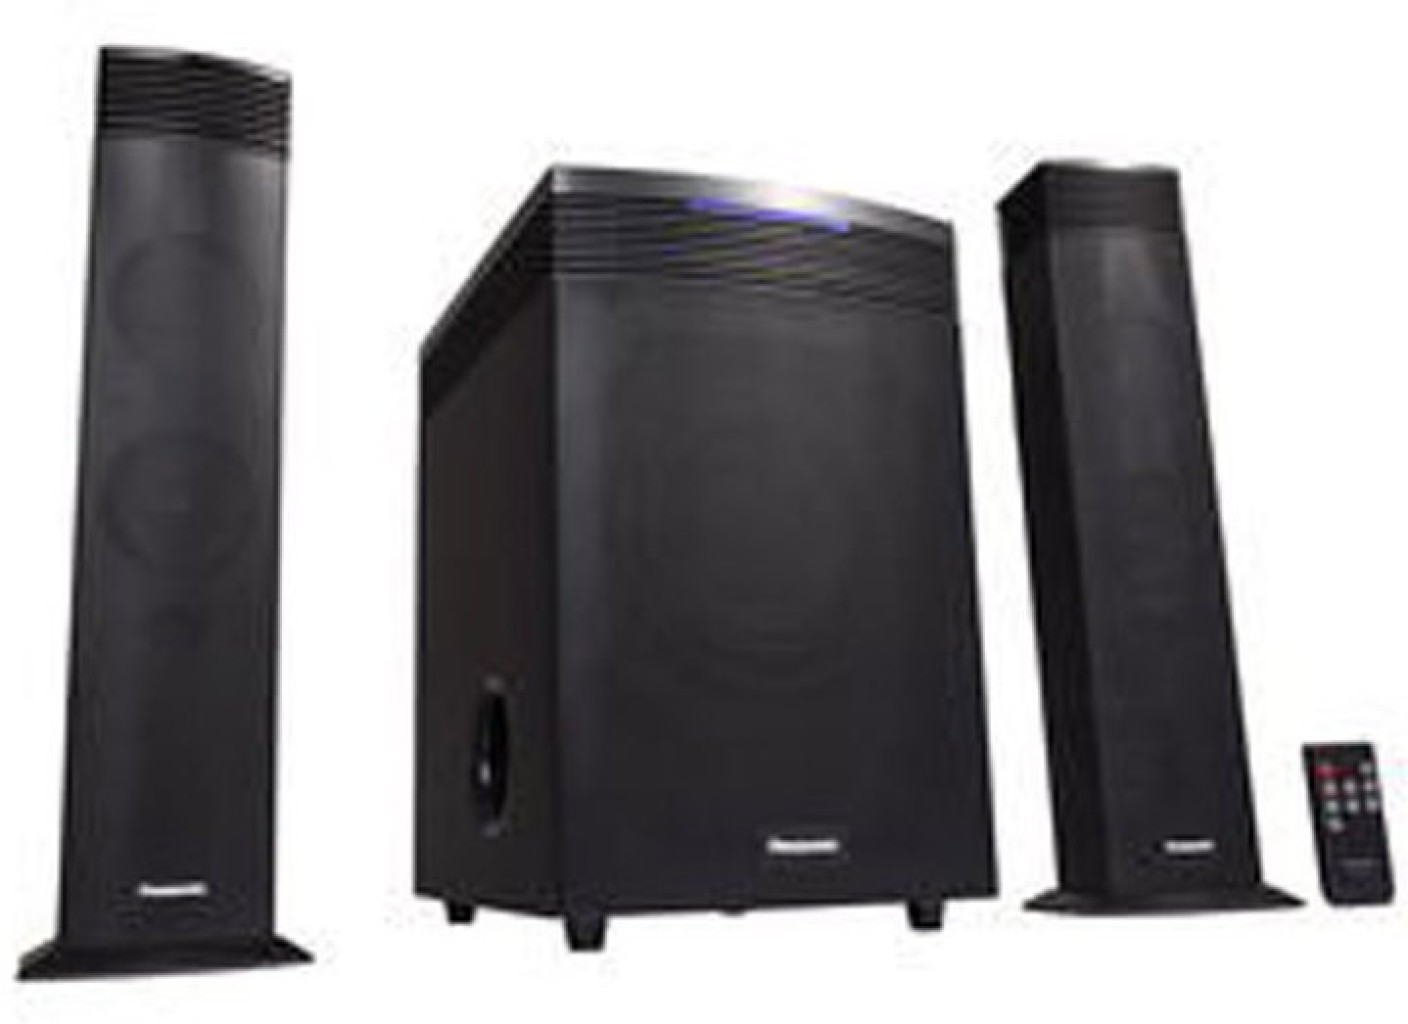 Buy Panasonic SC-HT20 Home Audio Speaker Online from Flipkart.com